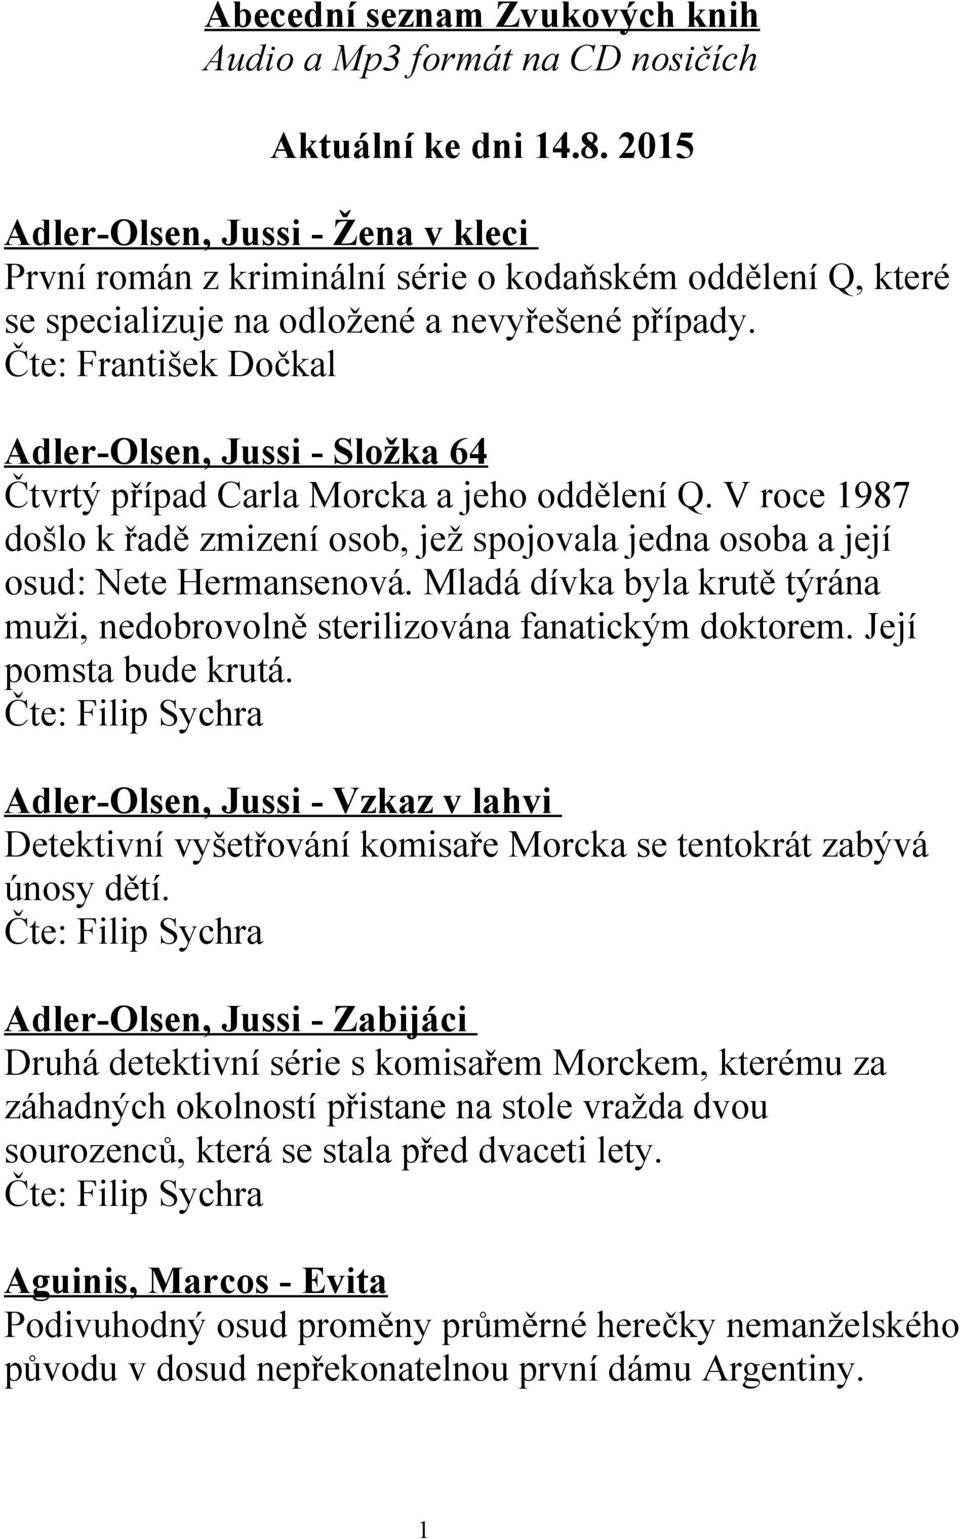 Čte: František Dočkal Adler-Olsen, Jussi - Složka 64 Čtvrtý případ Carla Morcka a jeho oddělení Q. V roce 1987 došlo k řadě zmizení osob, jež spojovala jedna osoba a její osud: Nete Hermansenová.